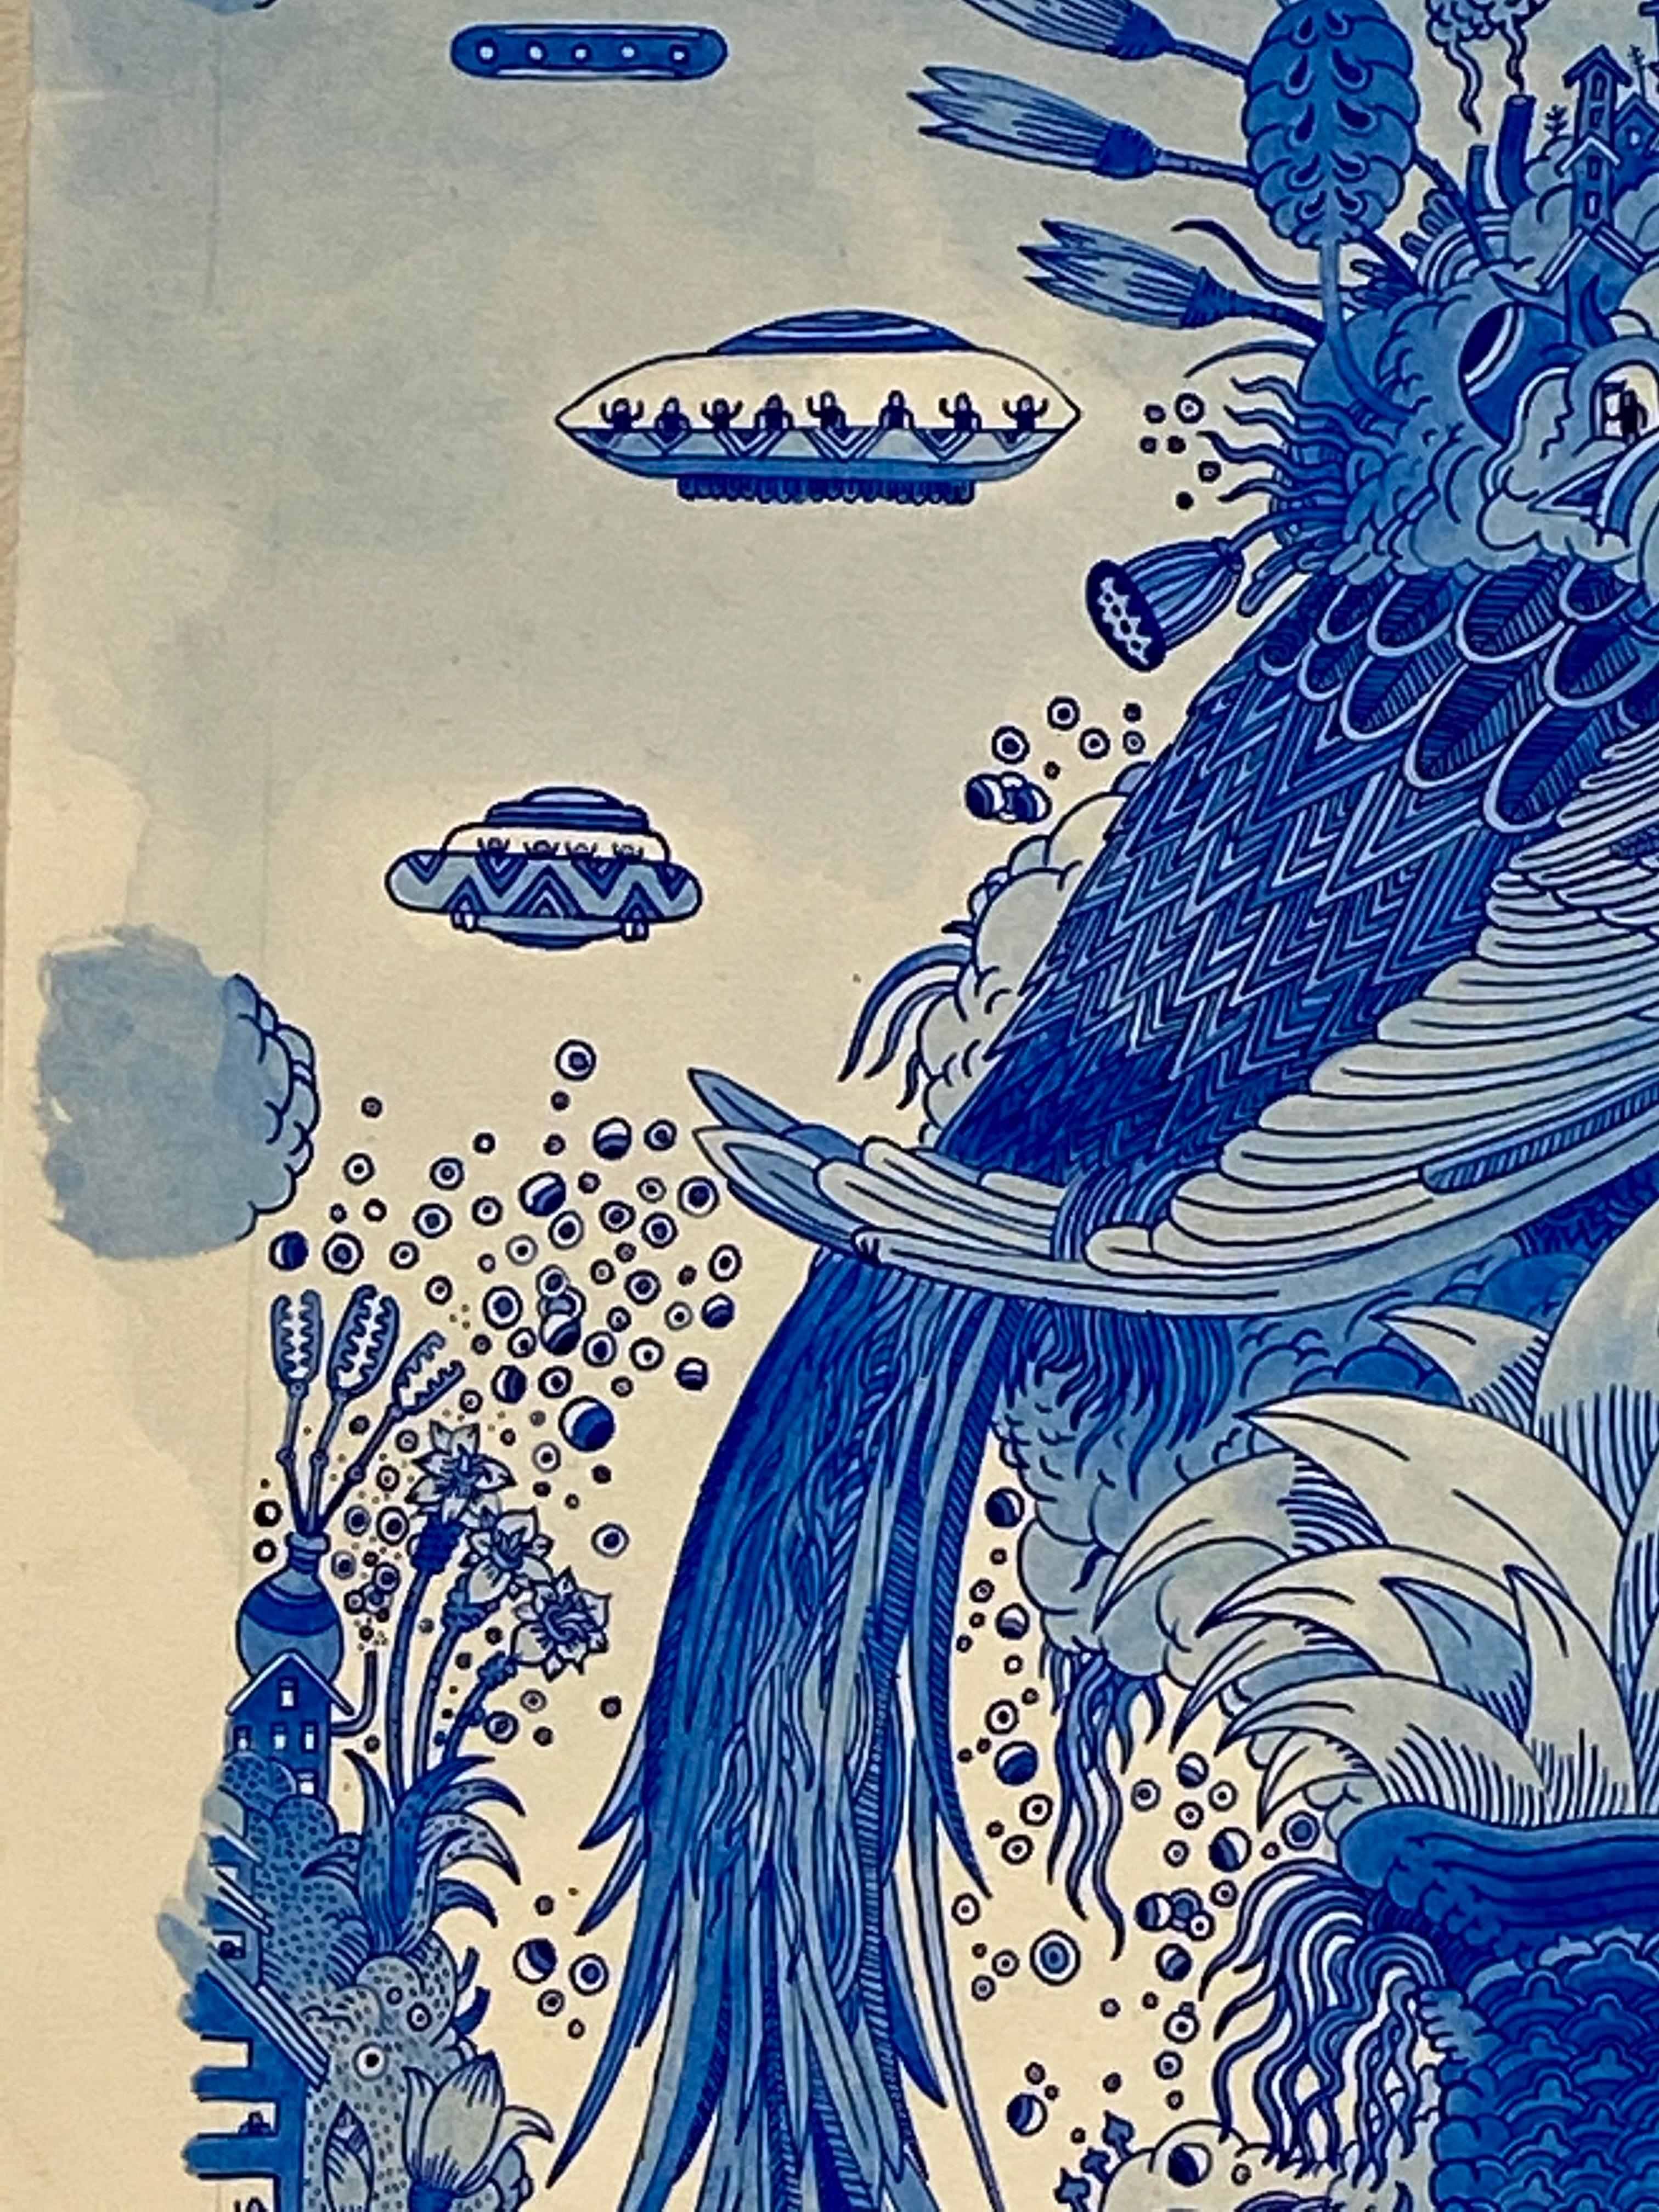 Ein futuristischer Tierhybrid steht im Mittelpunkt dieser fantastischen Landschaft in Acrylfarbe auf Arches-Aquarellpapier von Peter Hamlin. Das detailgetreue, vogelähnliche Wesen ist skurril und surreal. Auf seinem Rücken befindet sich ein kleines